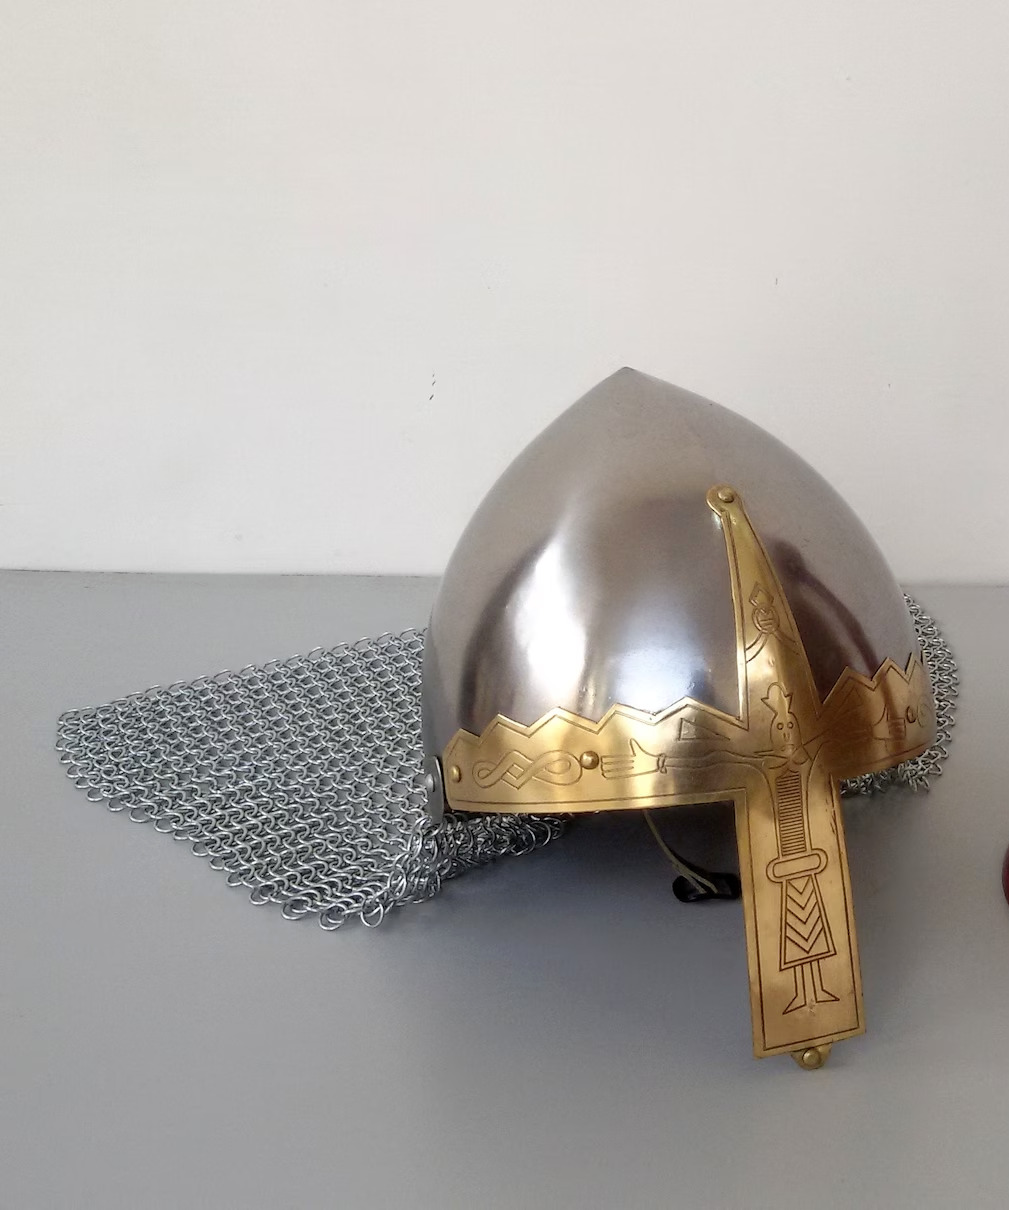 Birka Helmet - Nasal Helmet with Chainmail - Viking Metal Helmet for Costume